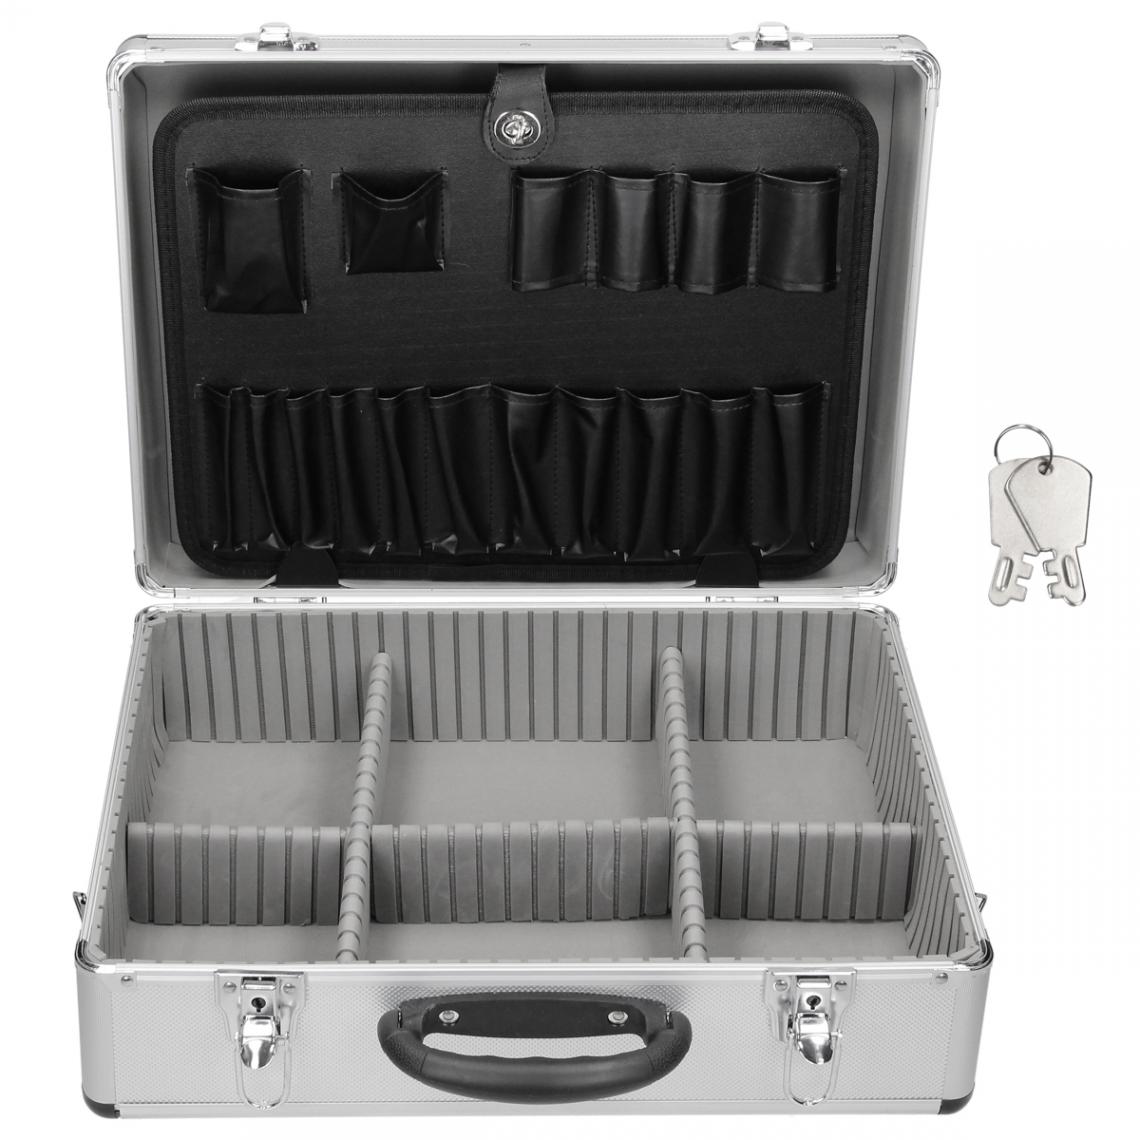 Ecd Germany - Valise aluminium vide malette à outils caisse avec compartiments de rangement - Boîtes à outils